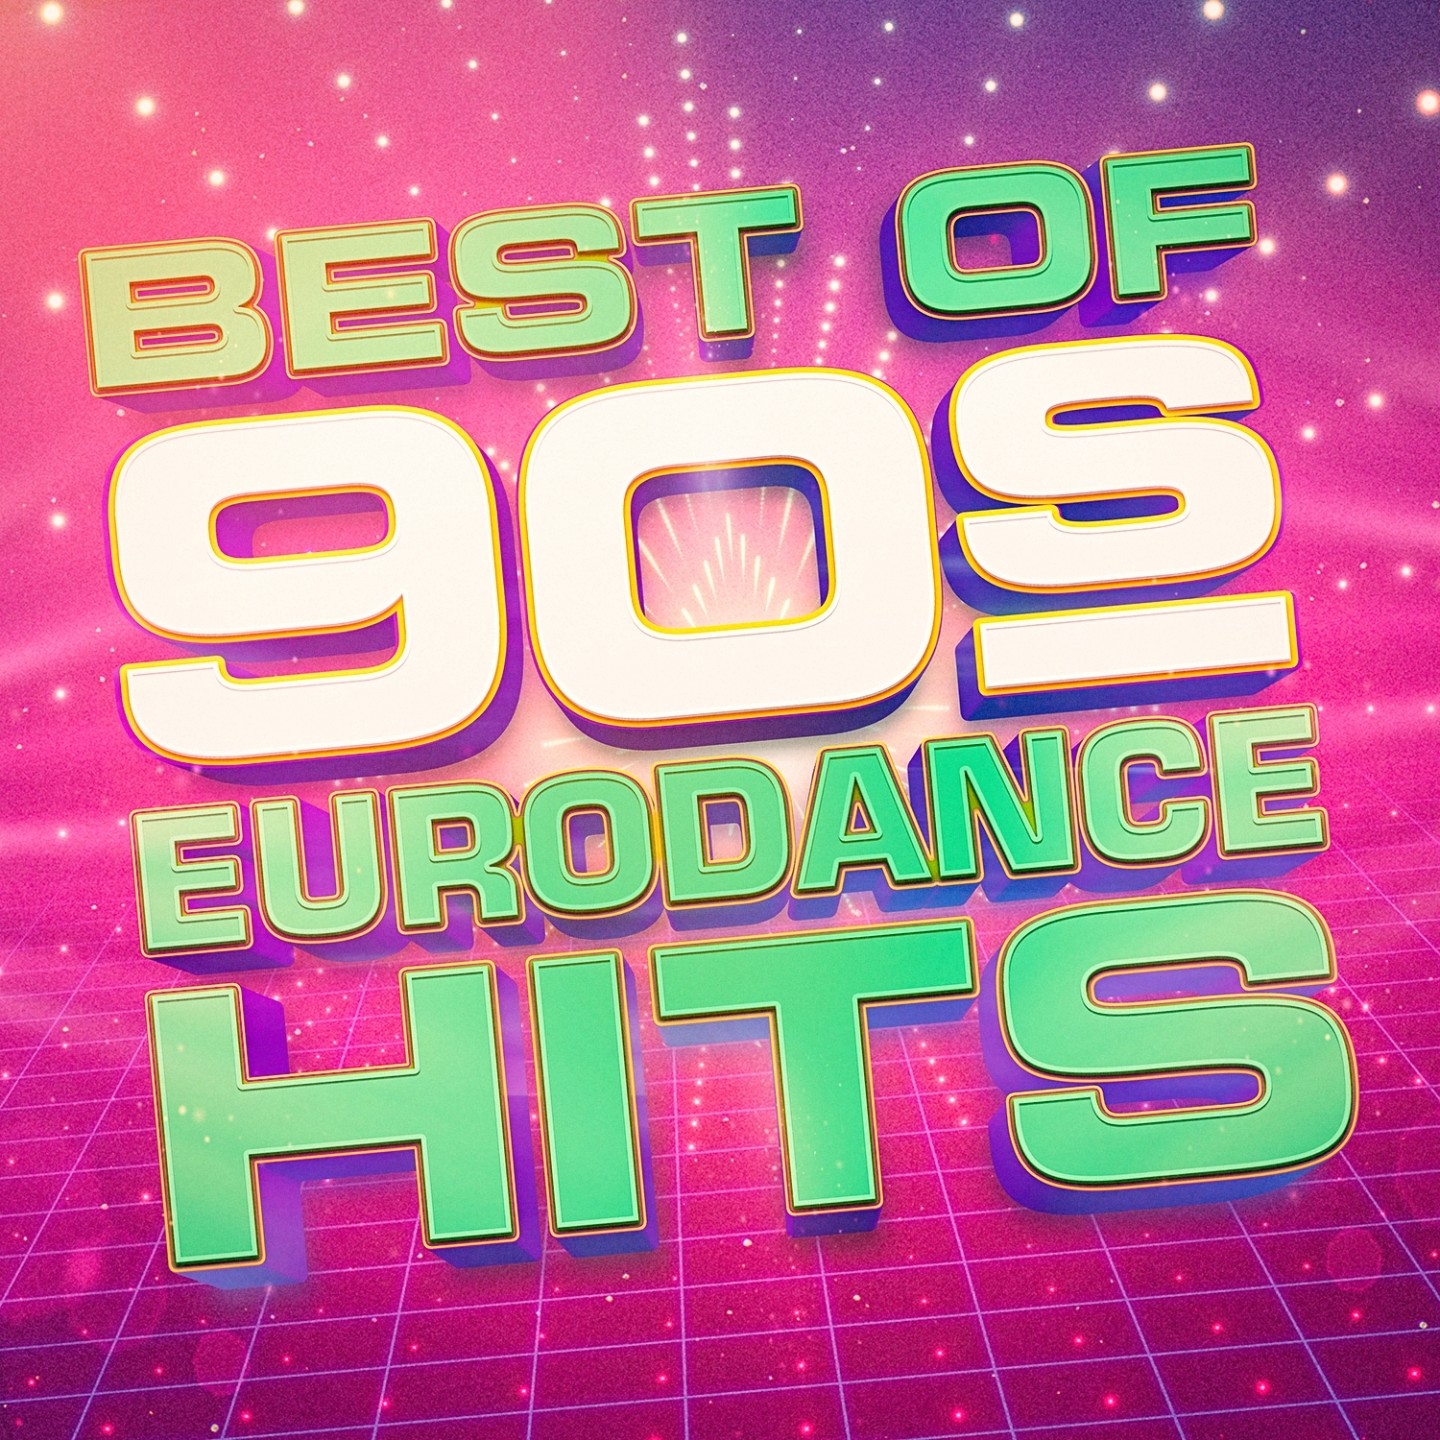 Евродэнс 90 слушать зарубежные. Евродэнс 90. Eurodance обложка. Eurodance 90s. Обложки евродэнс.